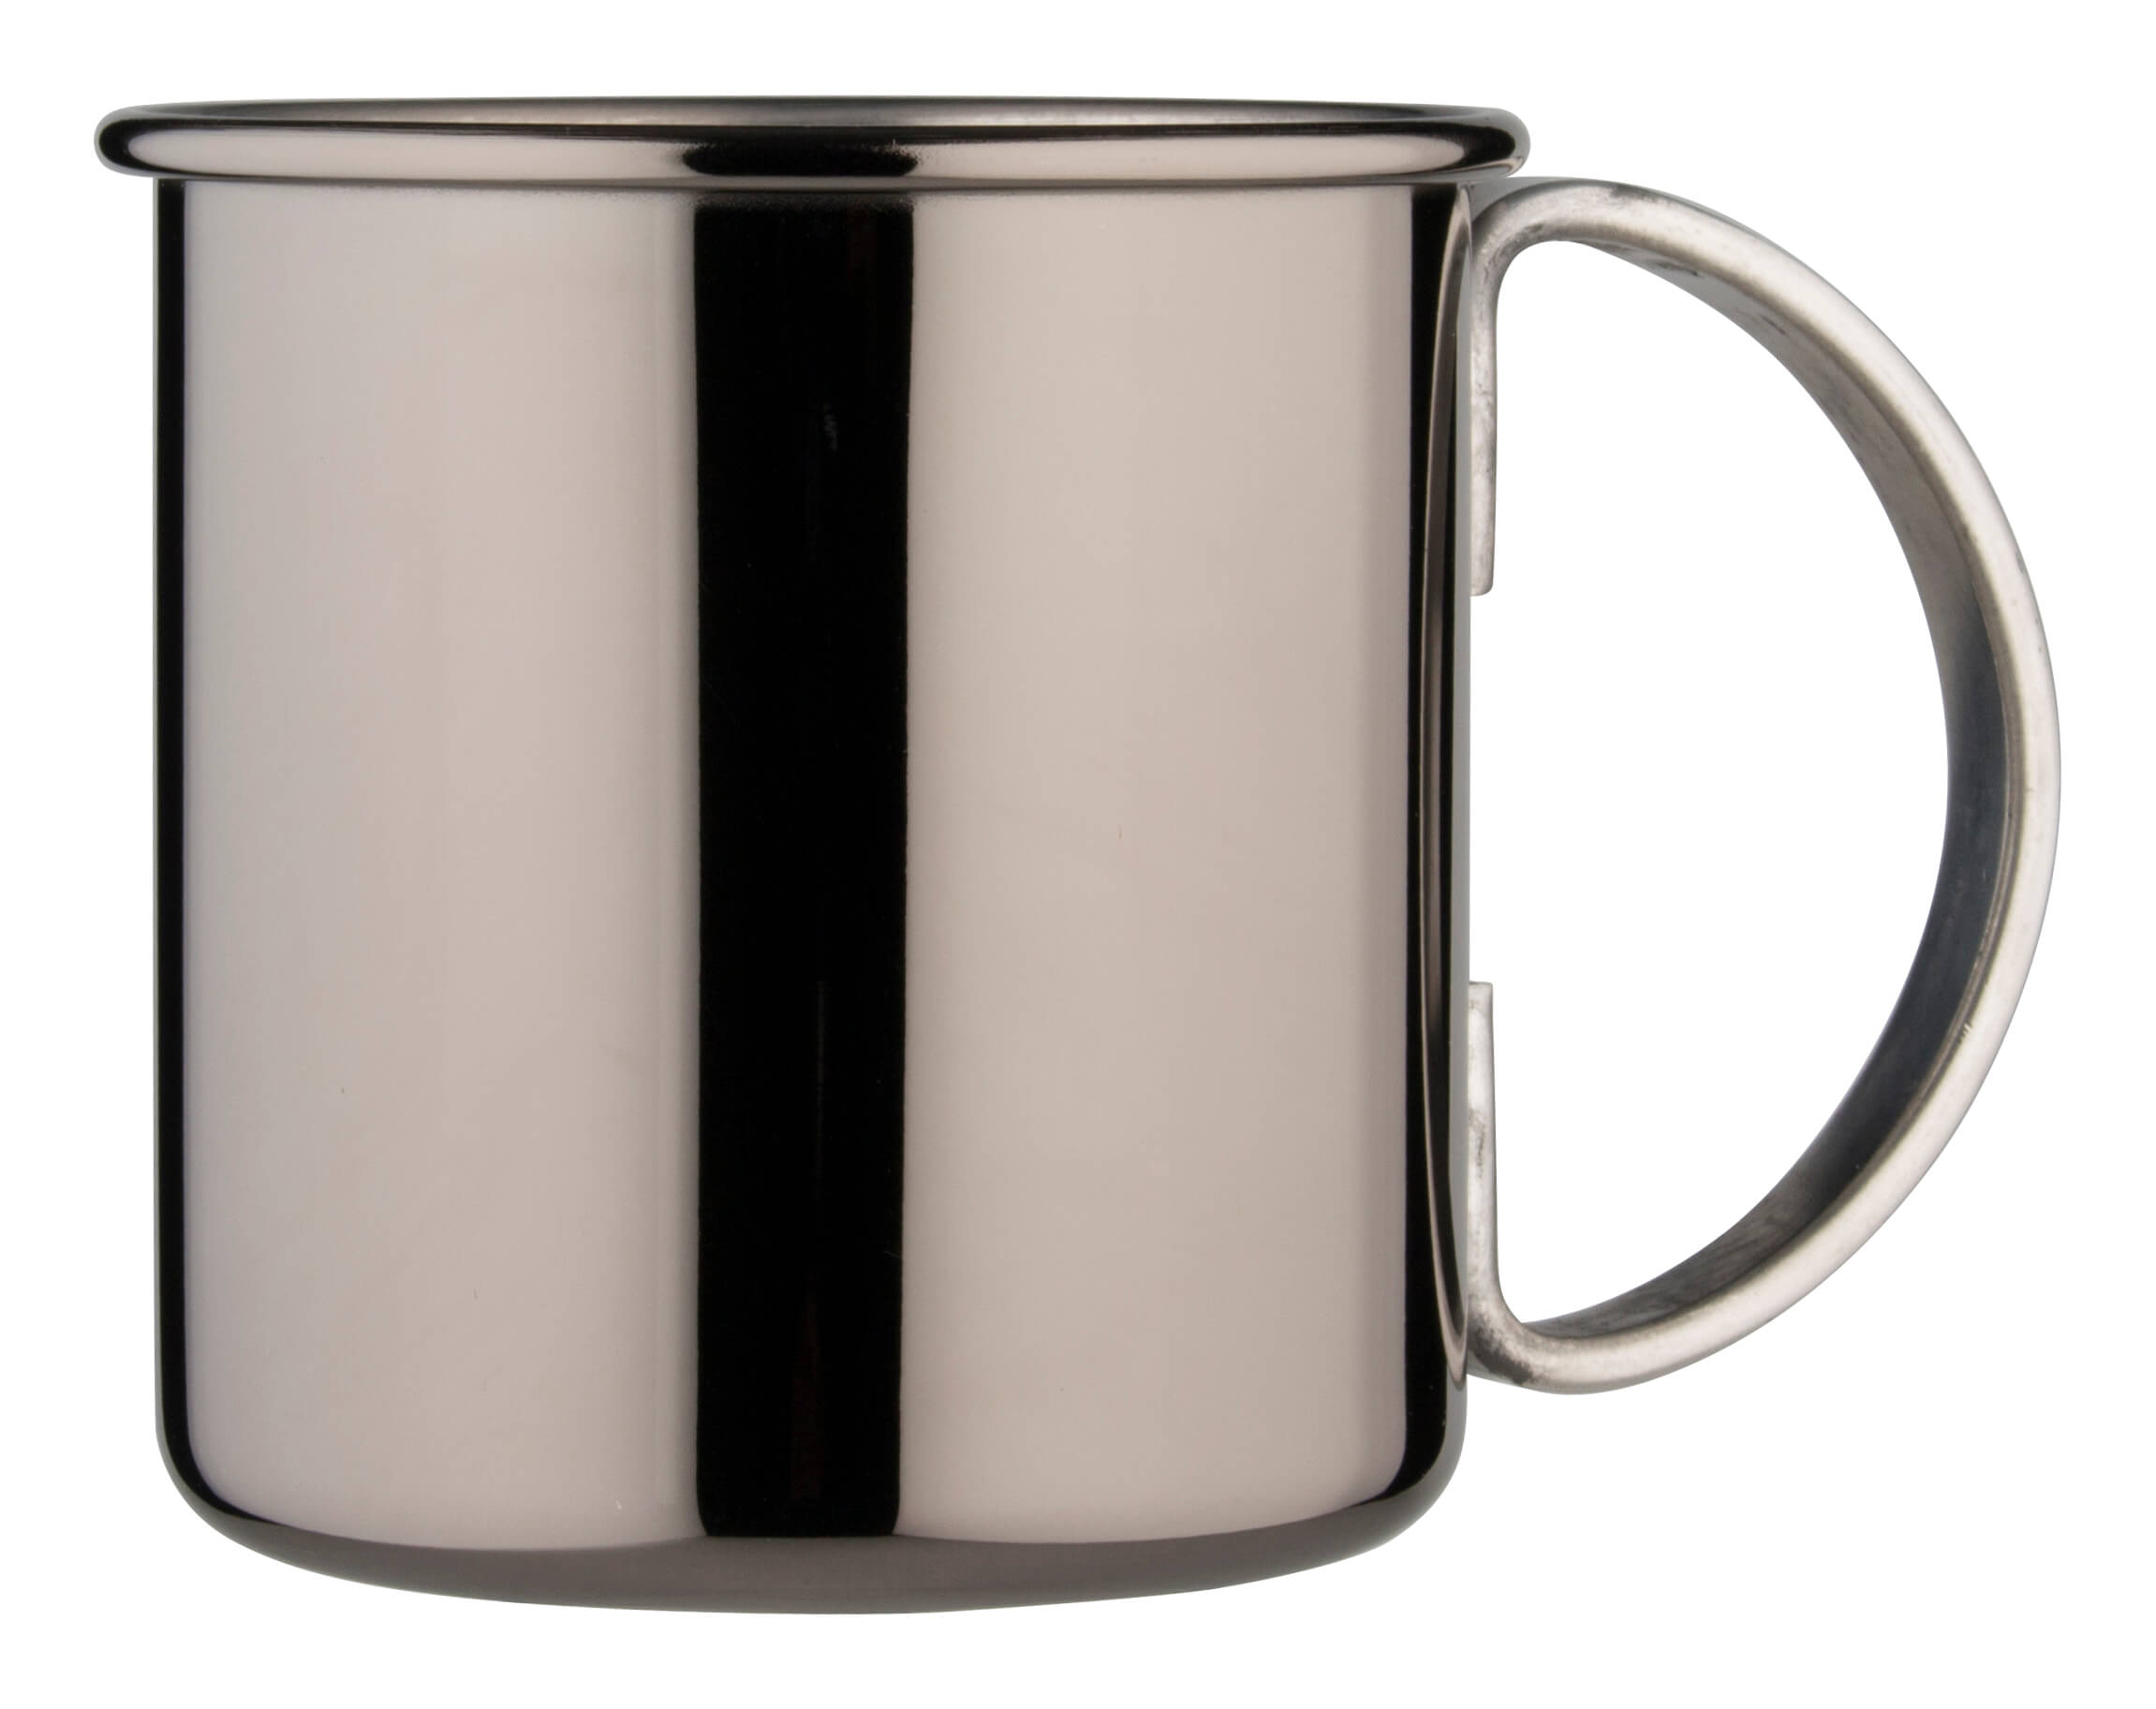 Moscow Mule mug, stainless steel, gunmetal black - 500ml